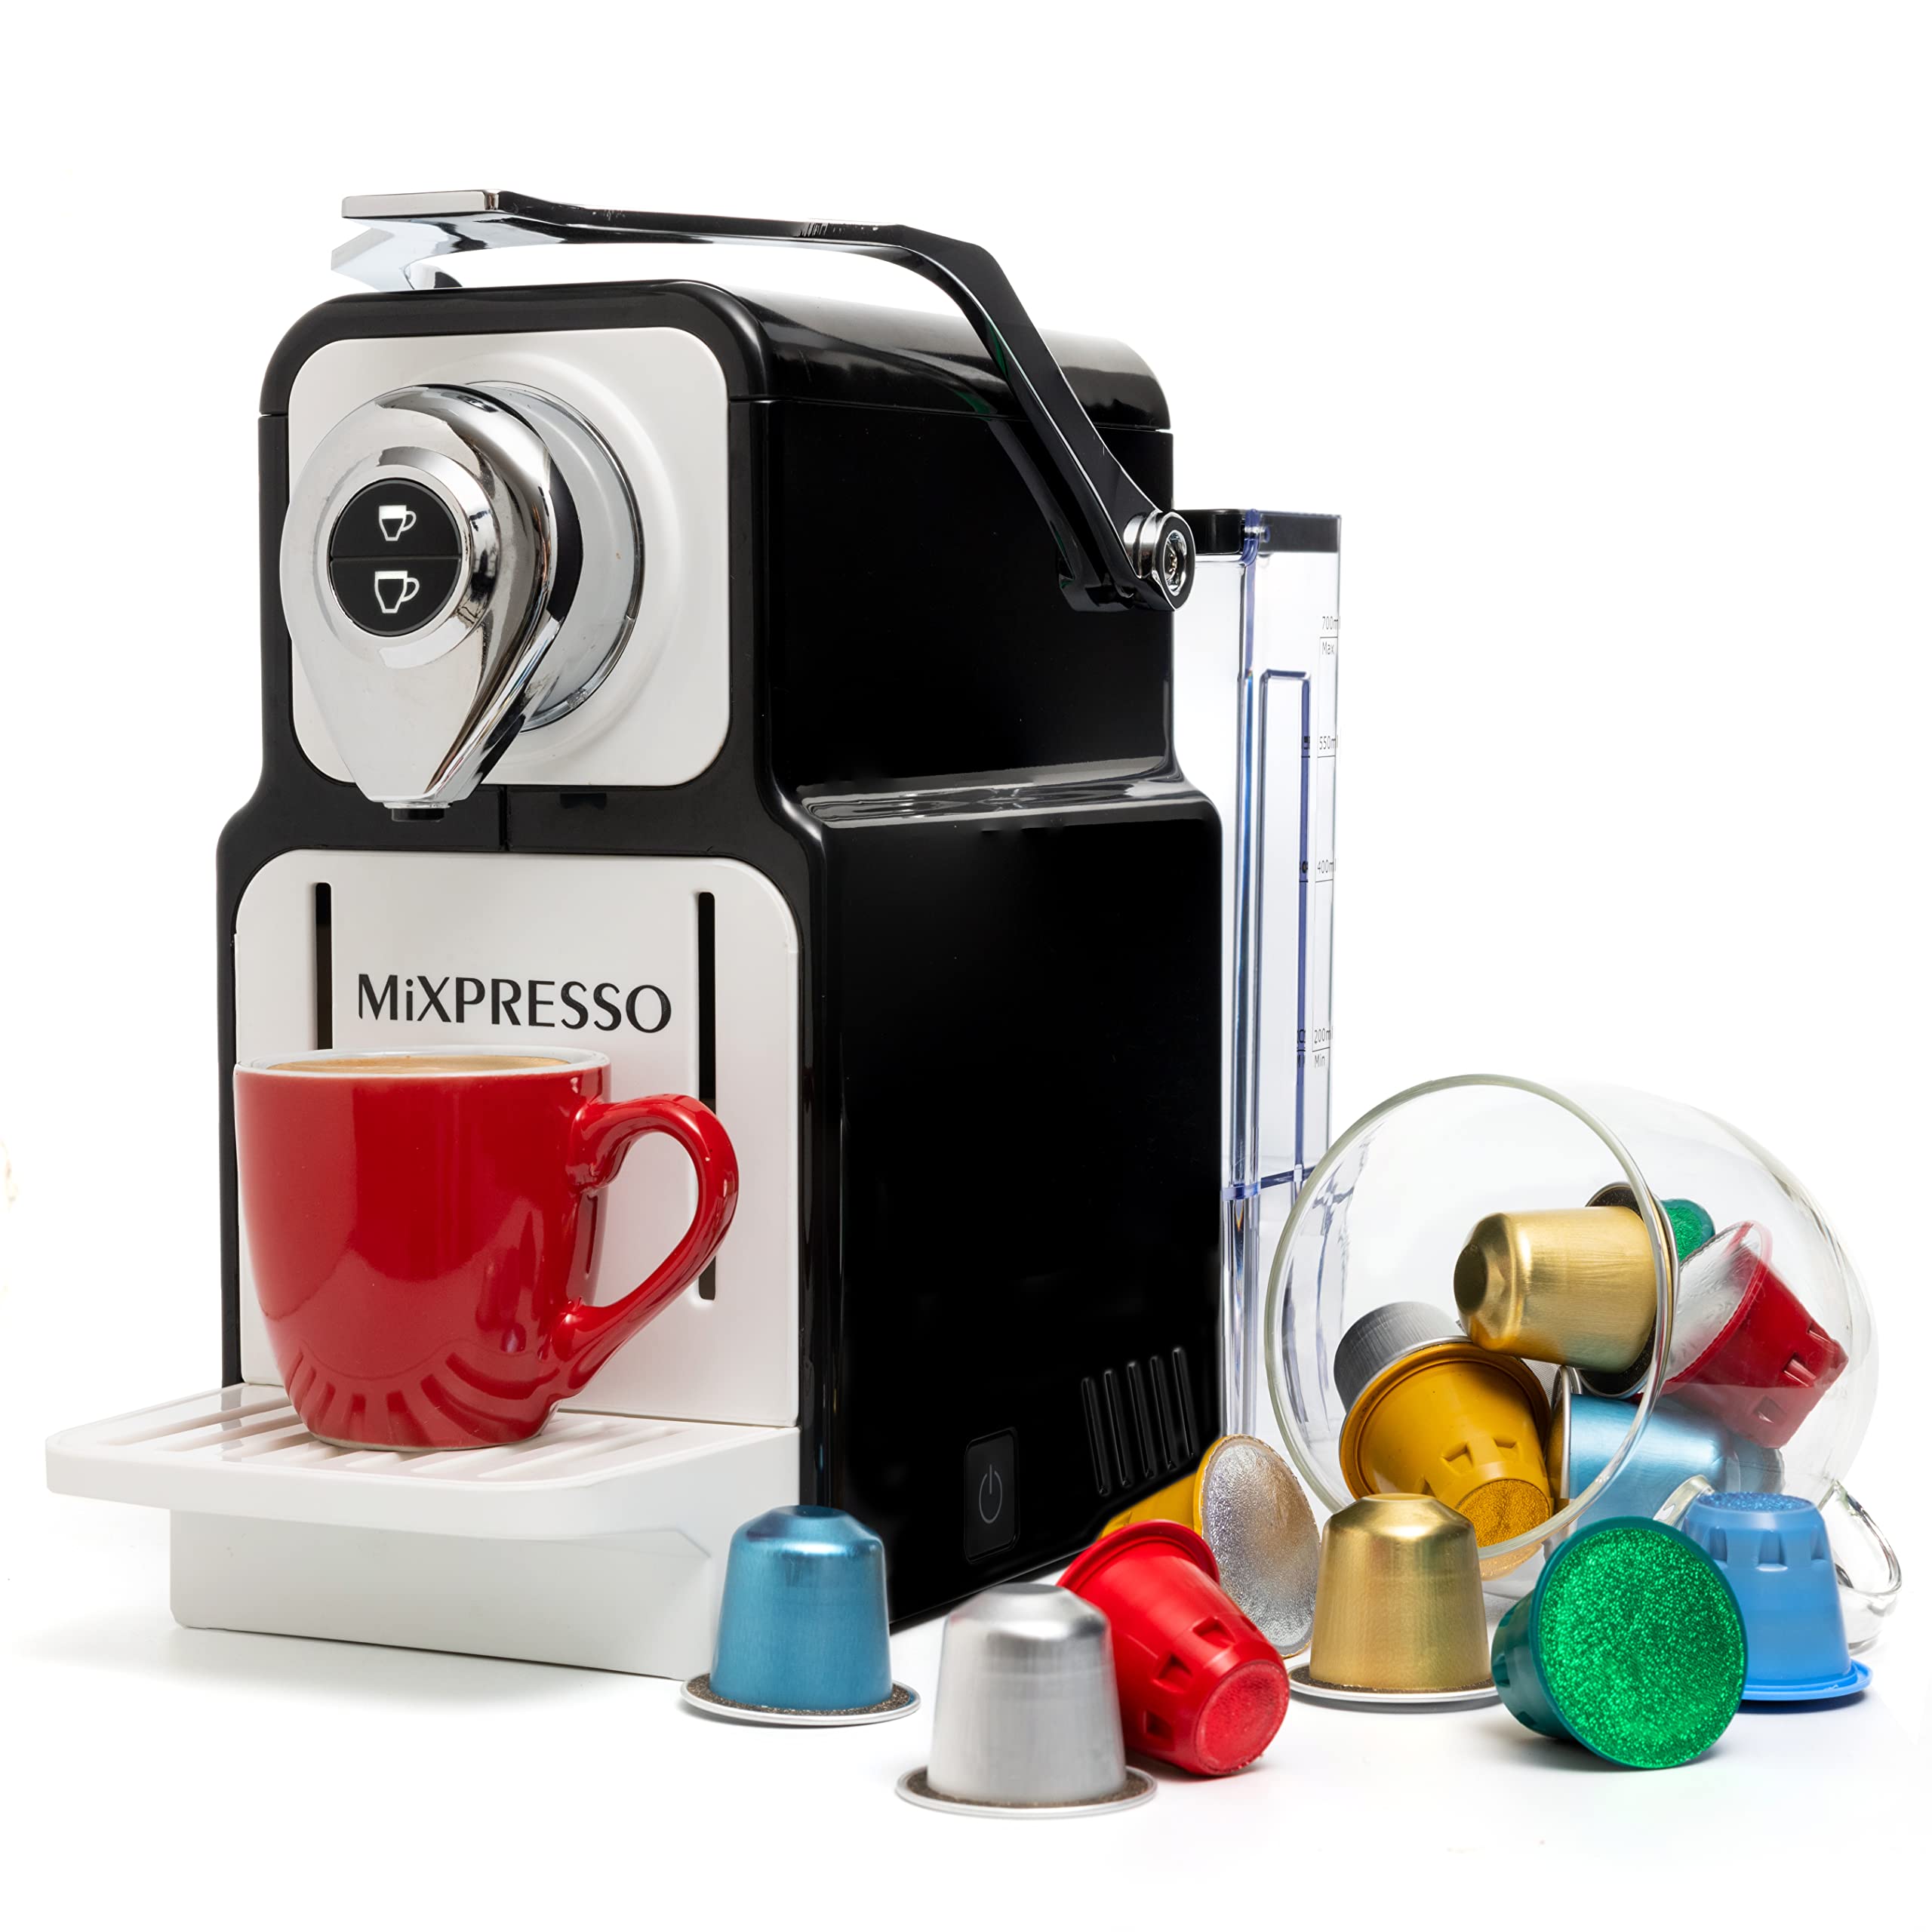 Mixpresso Espresso Machine